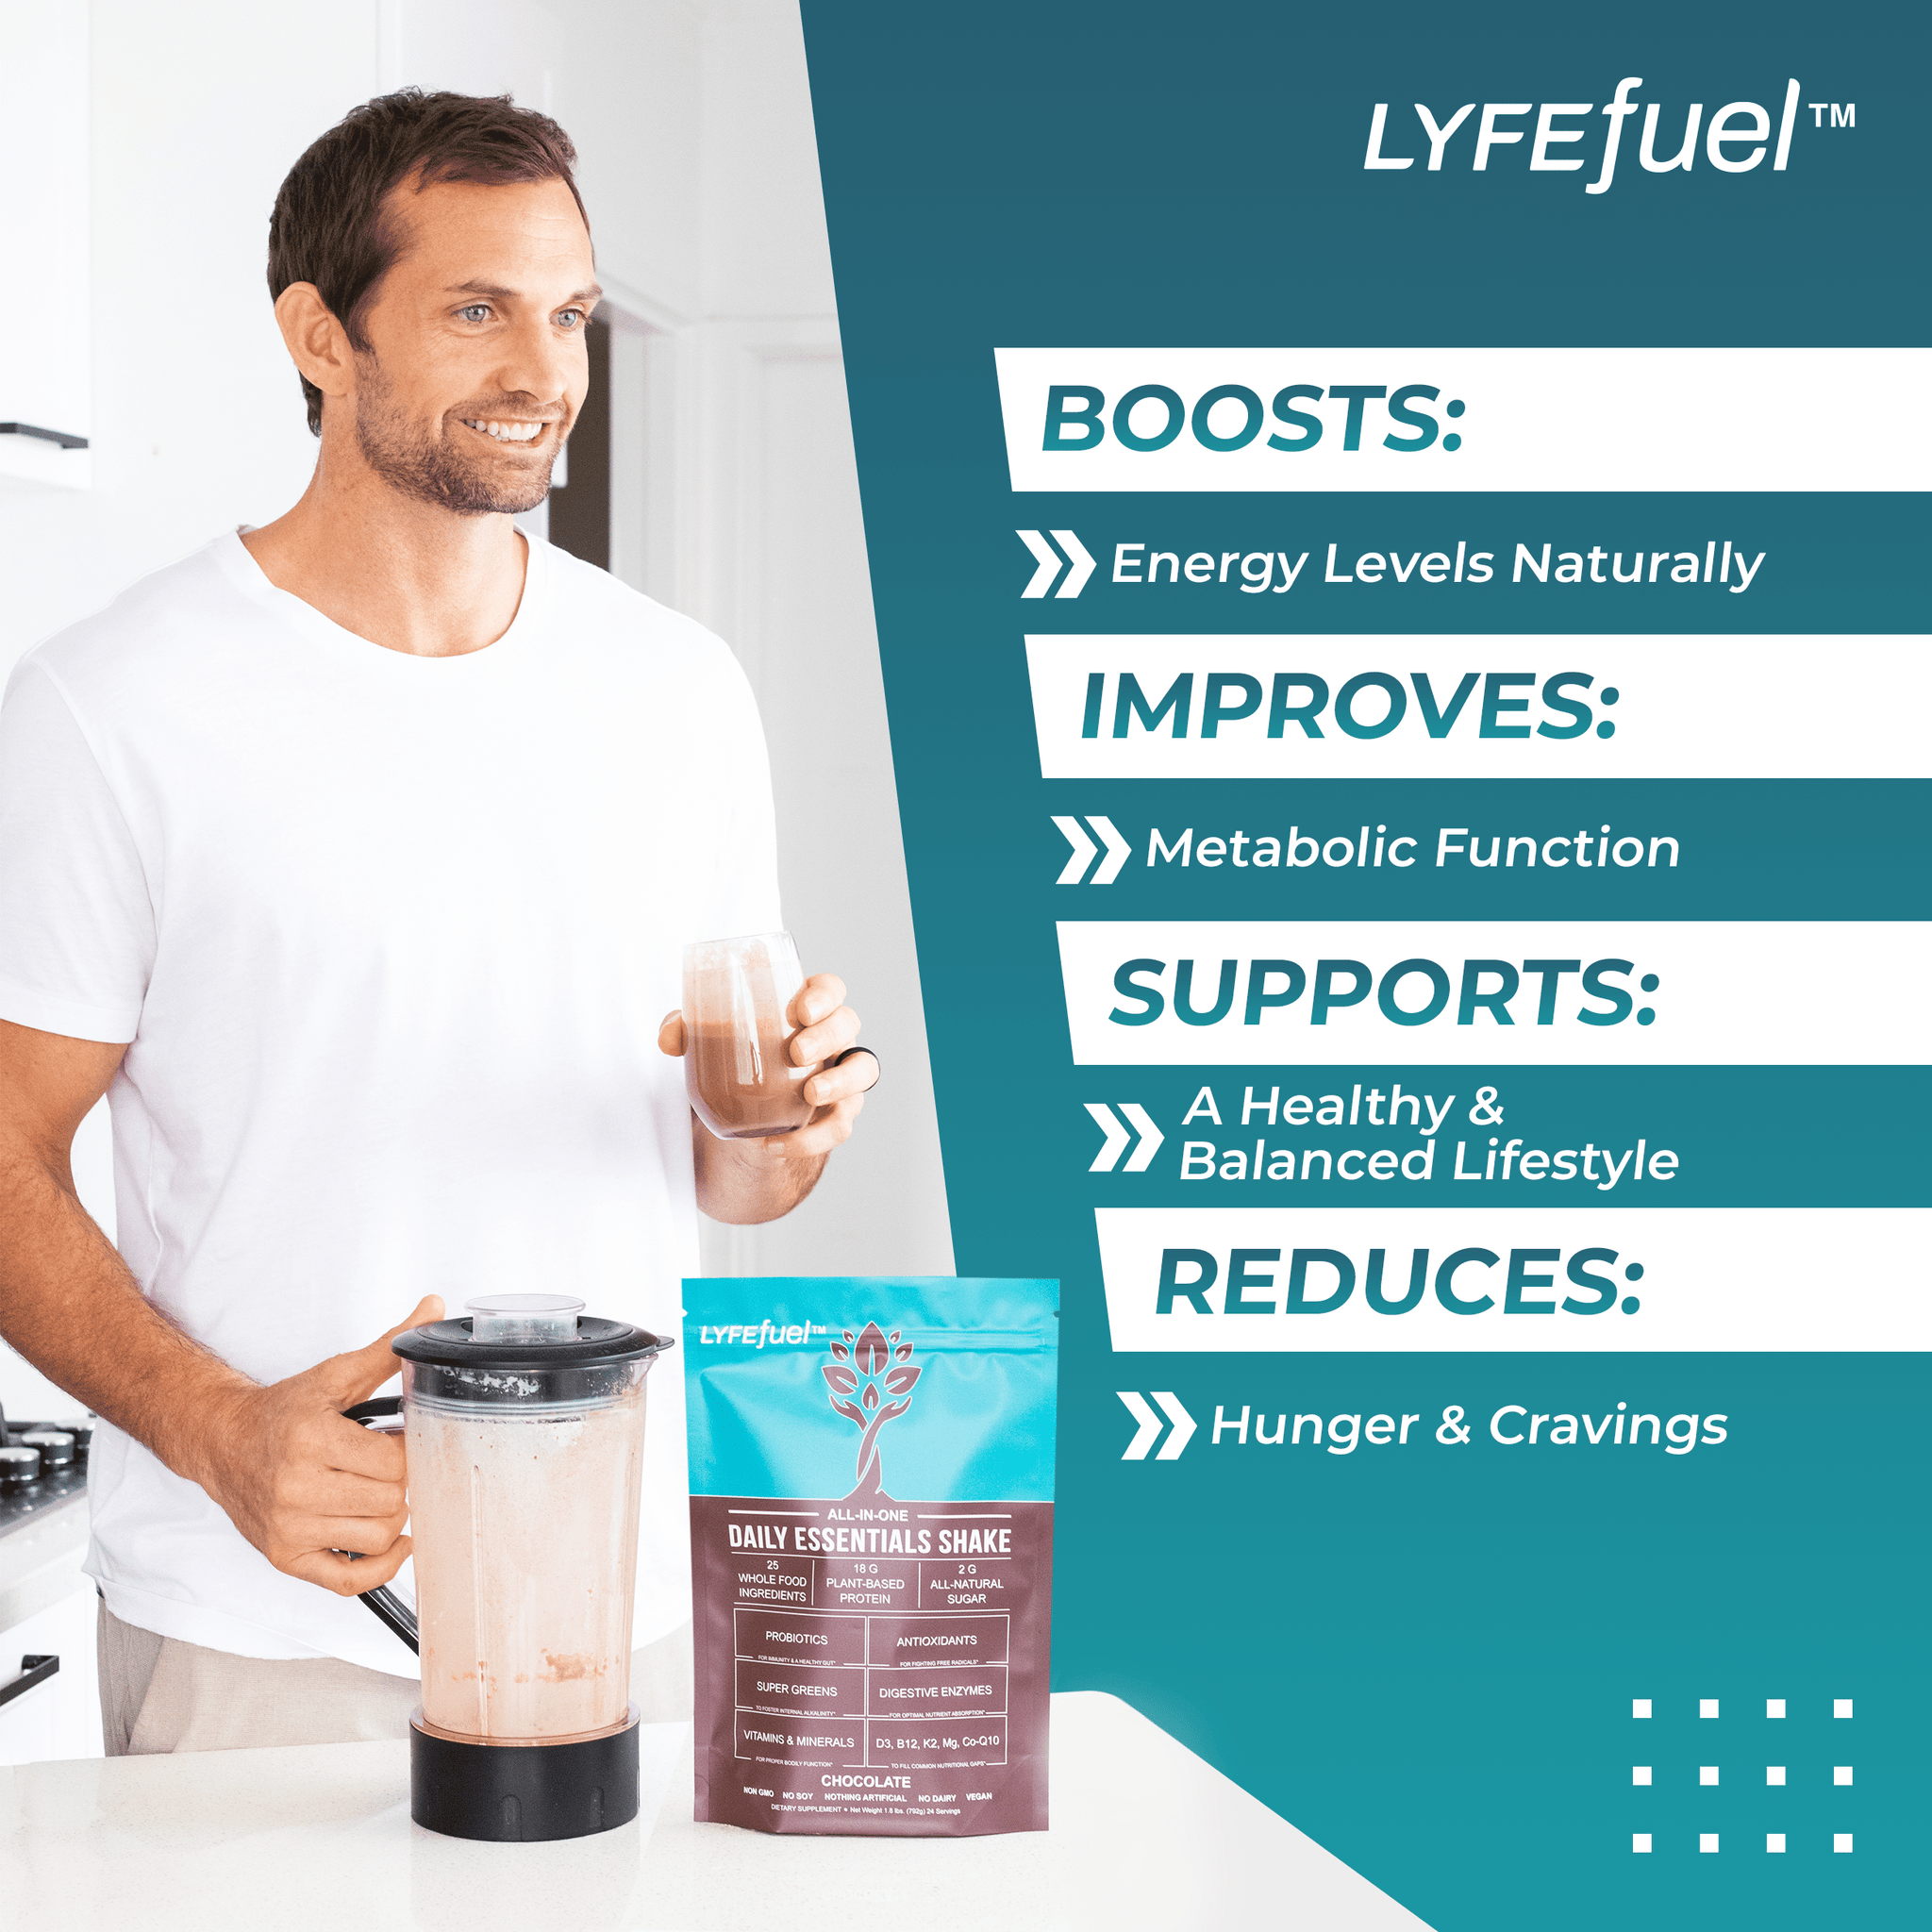 Essentials Nutrition Shake by LyfeFuel